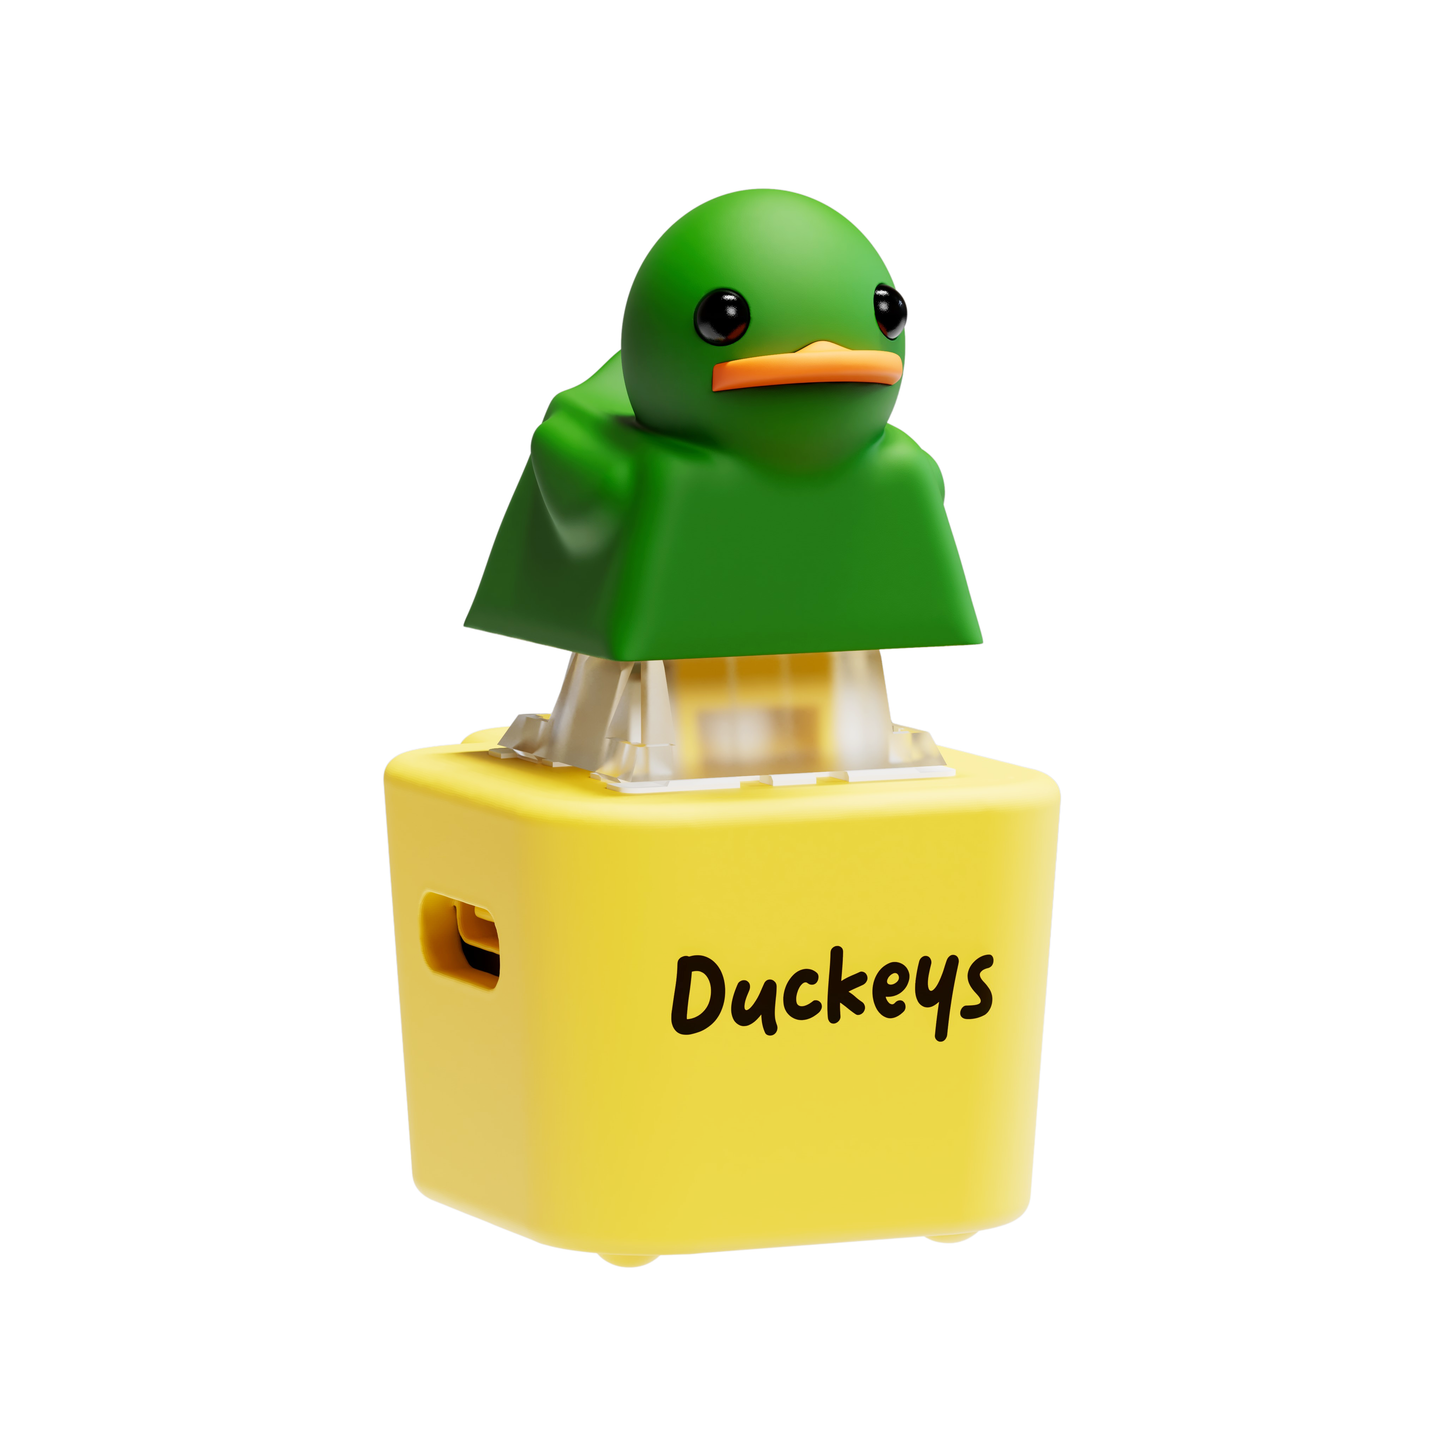 Quackey - Fidget Toy that Quacks!